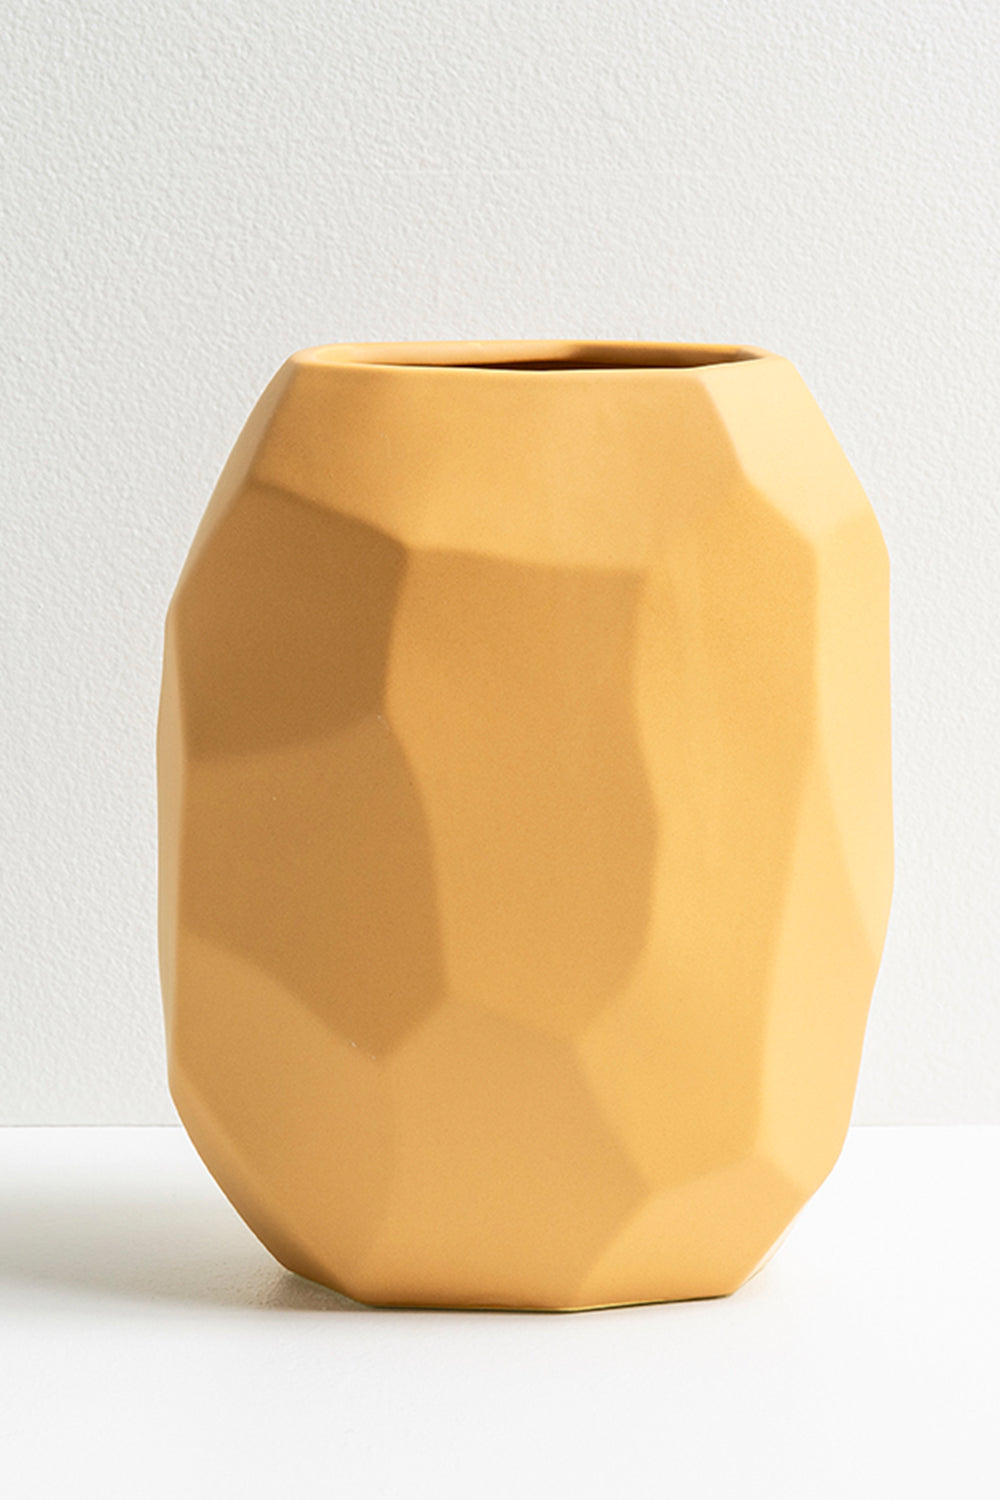 KAS - Mode Vase - Mustard